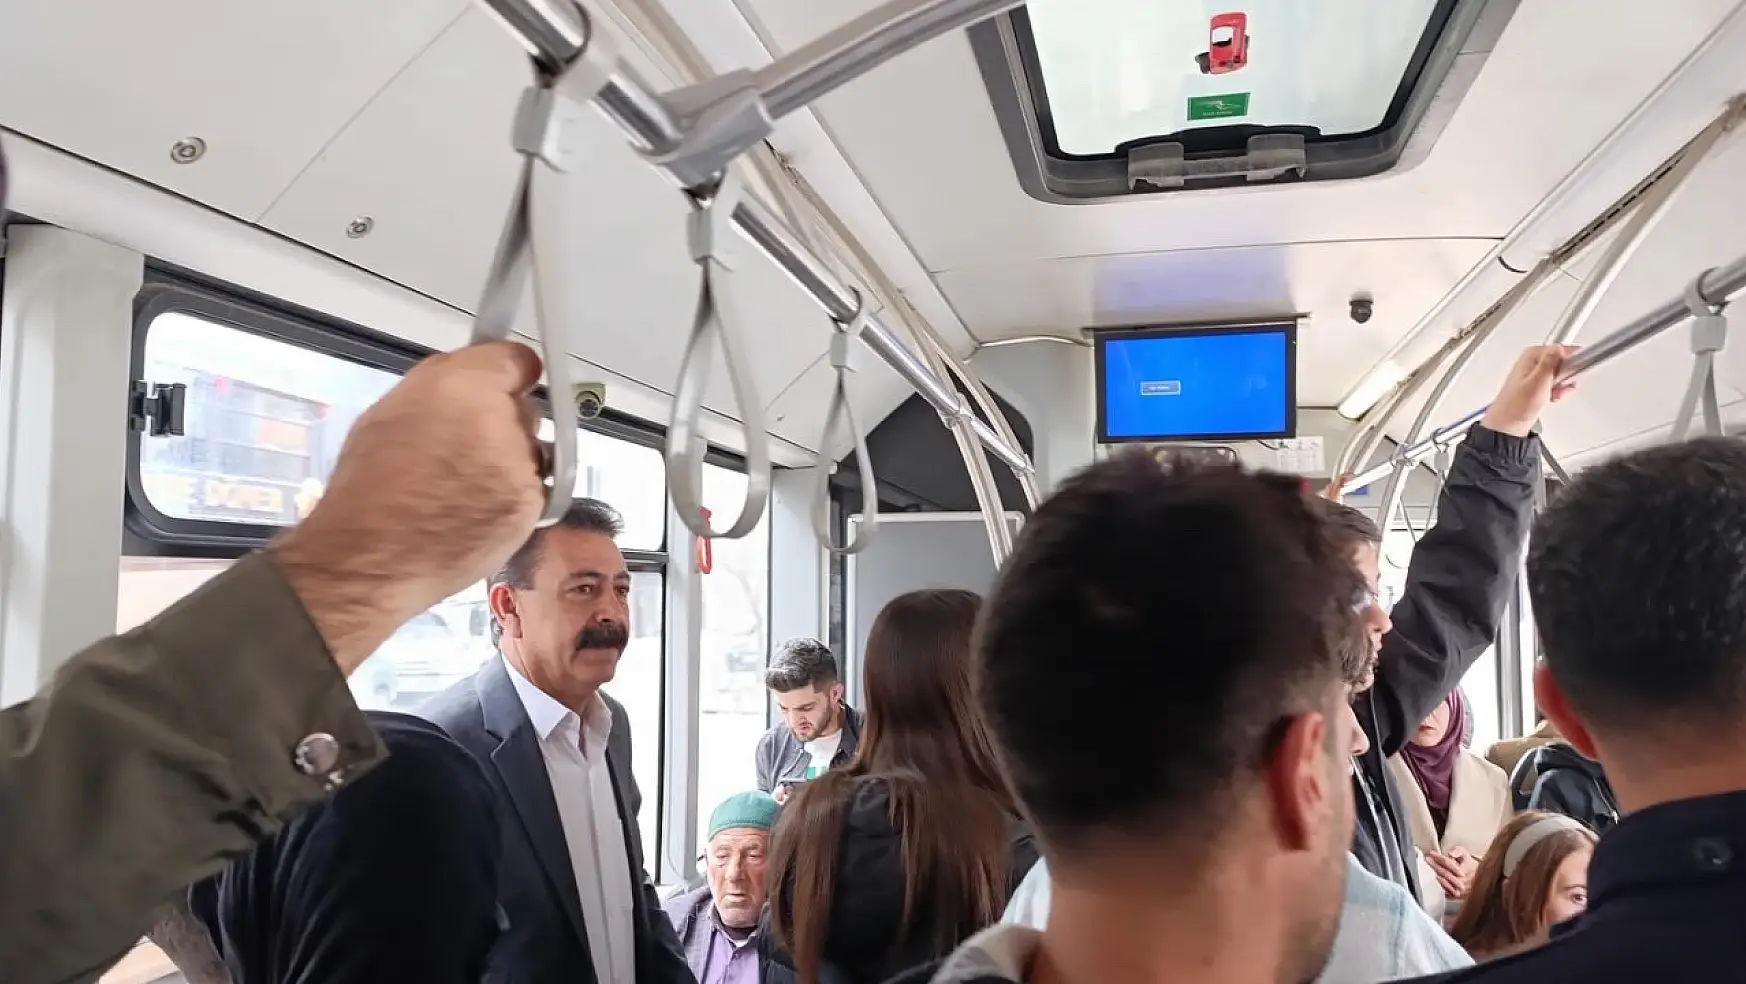 Ağrı Belediyesi Eş Başkanı Memet Akkuş ilk mesaisinde toplu ulaşımı kullandı